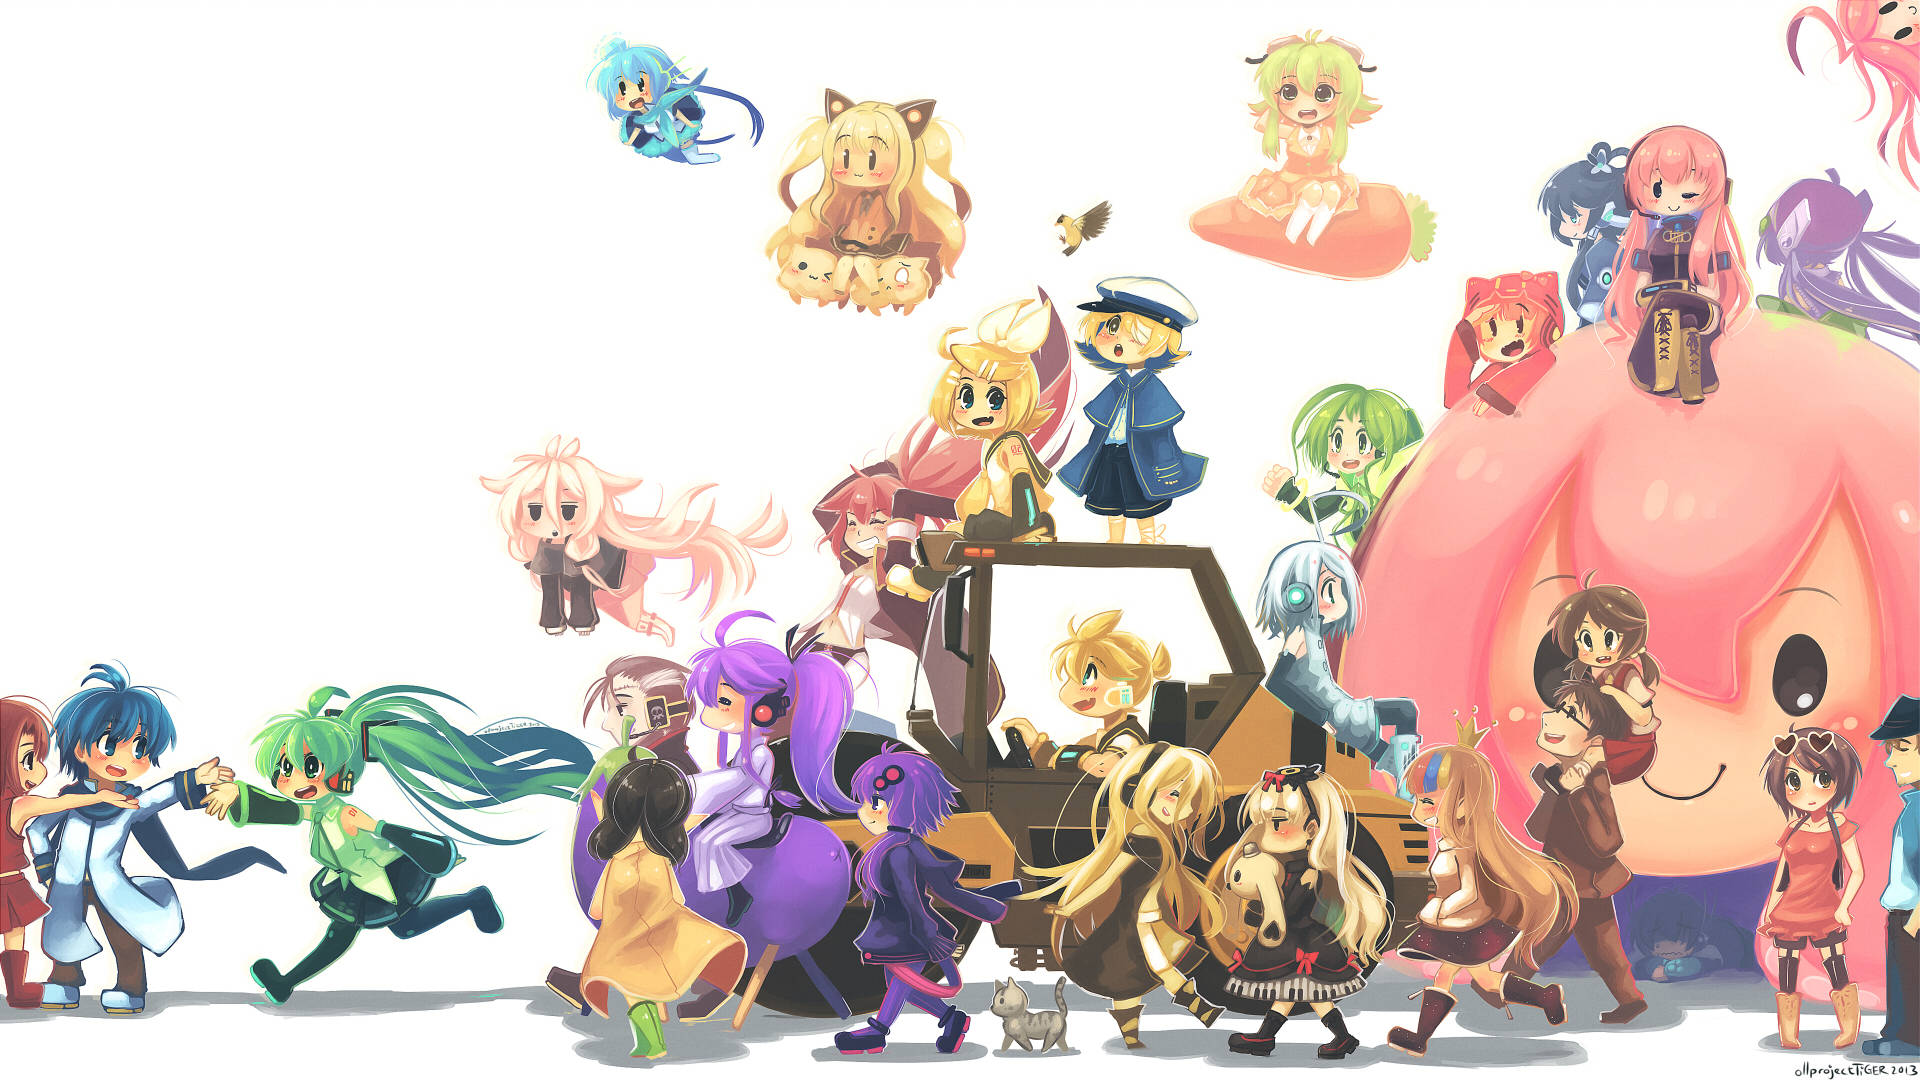 Et farverigt og muntert udsnit som viser den elskede Vocaloid-karakter, Miku. Wallpaper